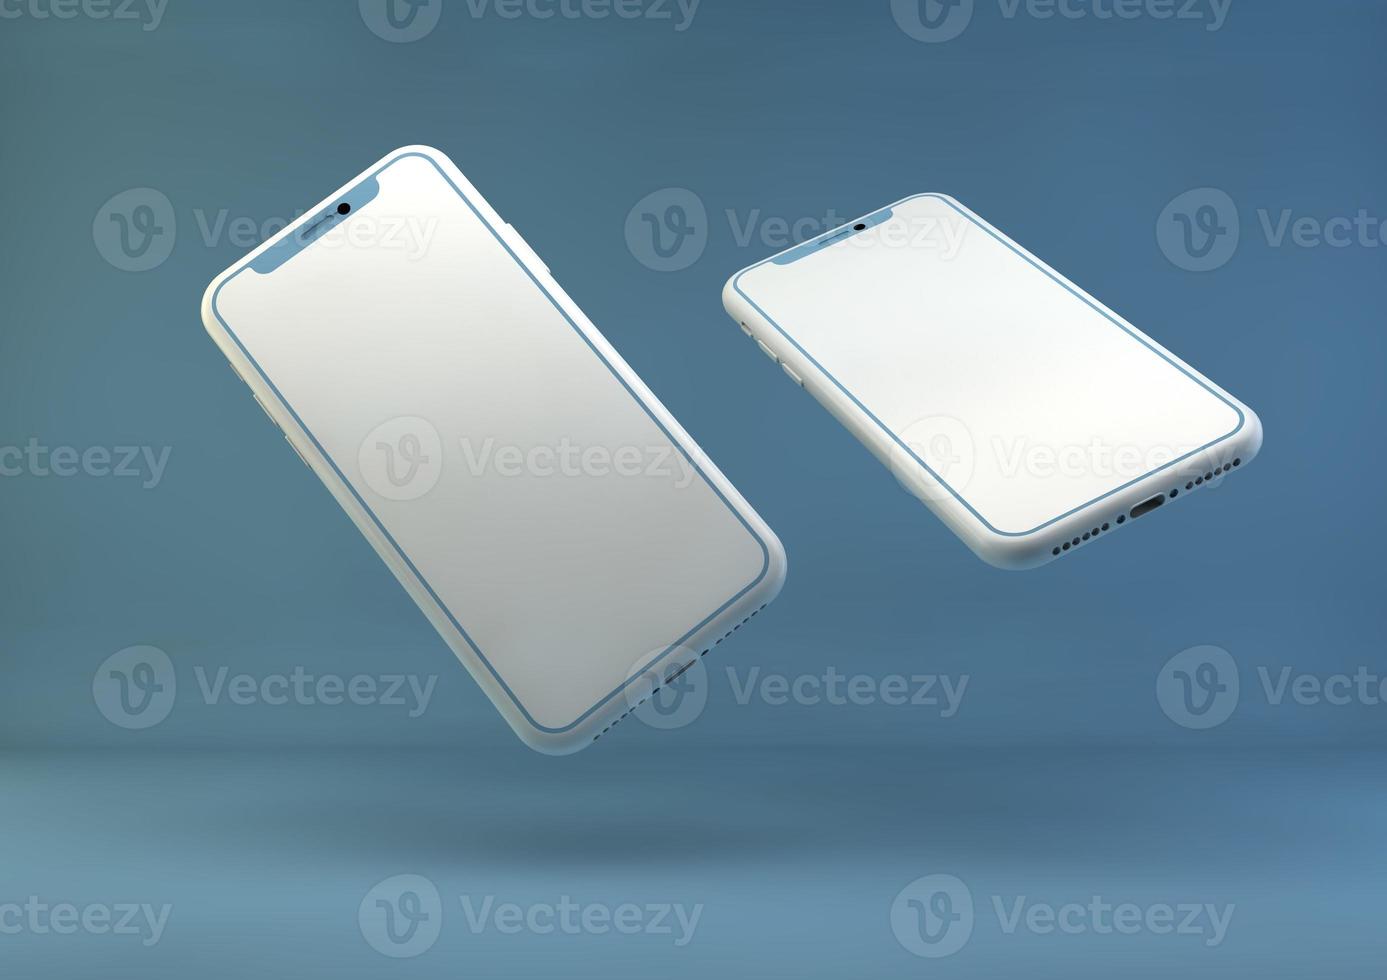 maquete sem moldura de smartphone. Renderização 3D do novo iphone na cor prata - modelo com tela em branco para apresentação do aplicativo. foto